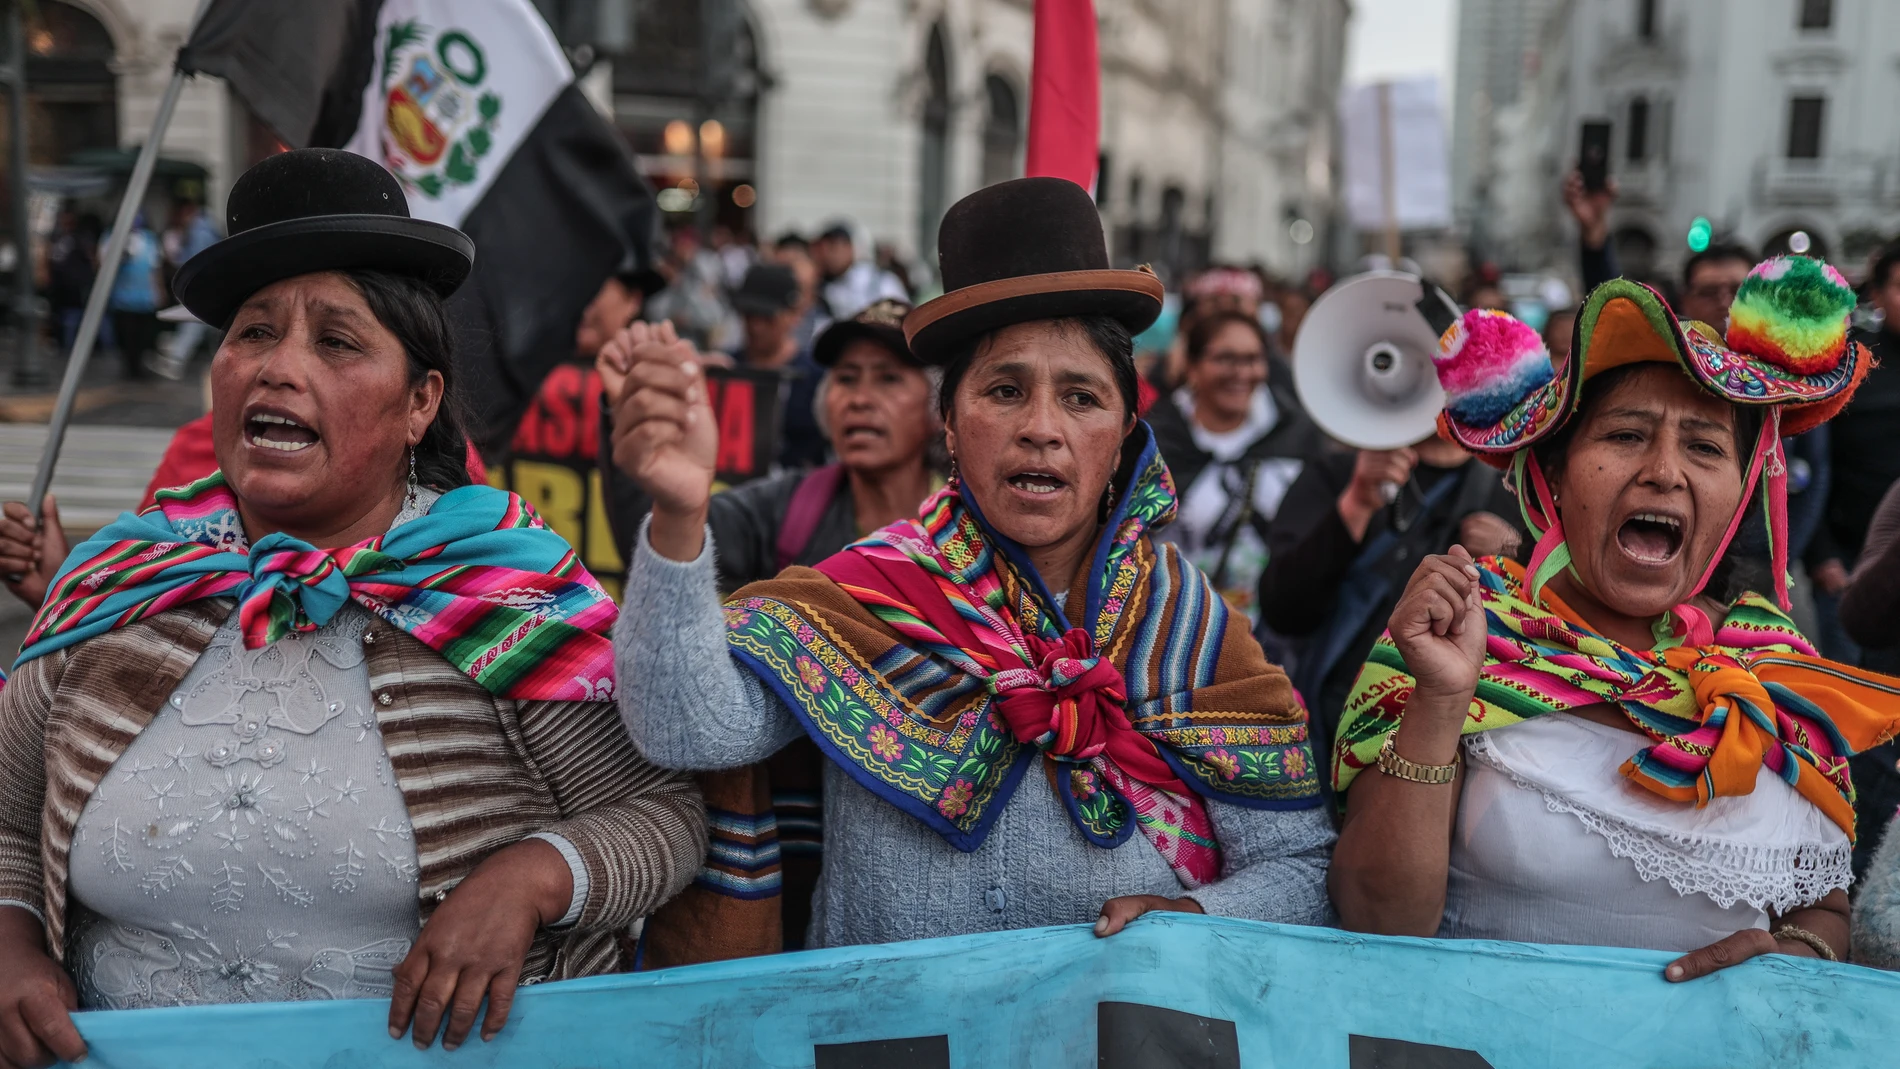 AME4633. LIMA (PERÚ), 20/07/2023.- Mujeres se manifiestan hoy en la Plaza San Martín, en Lima (Perú). El segundo día de la jornada de protestas antigubernamentales en Perú se desarrolló este jueves con movilizaciones y bloqueos en nueve provincias del país, y una vigilia de manifestantes en la sede del Jurado Nacional de Elecciones (JNE) en Lima, en apoyo a su titular que ha recibido amenazas de muerte y en defensa de la democracia. EFE/ Aldair Mejia 